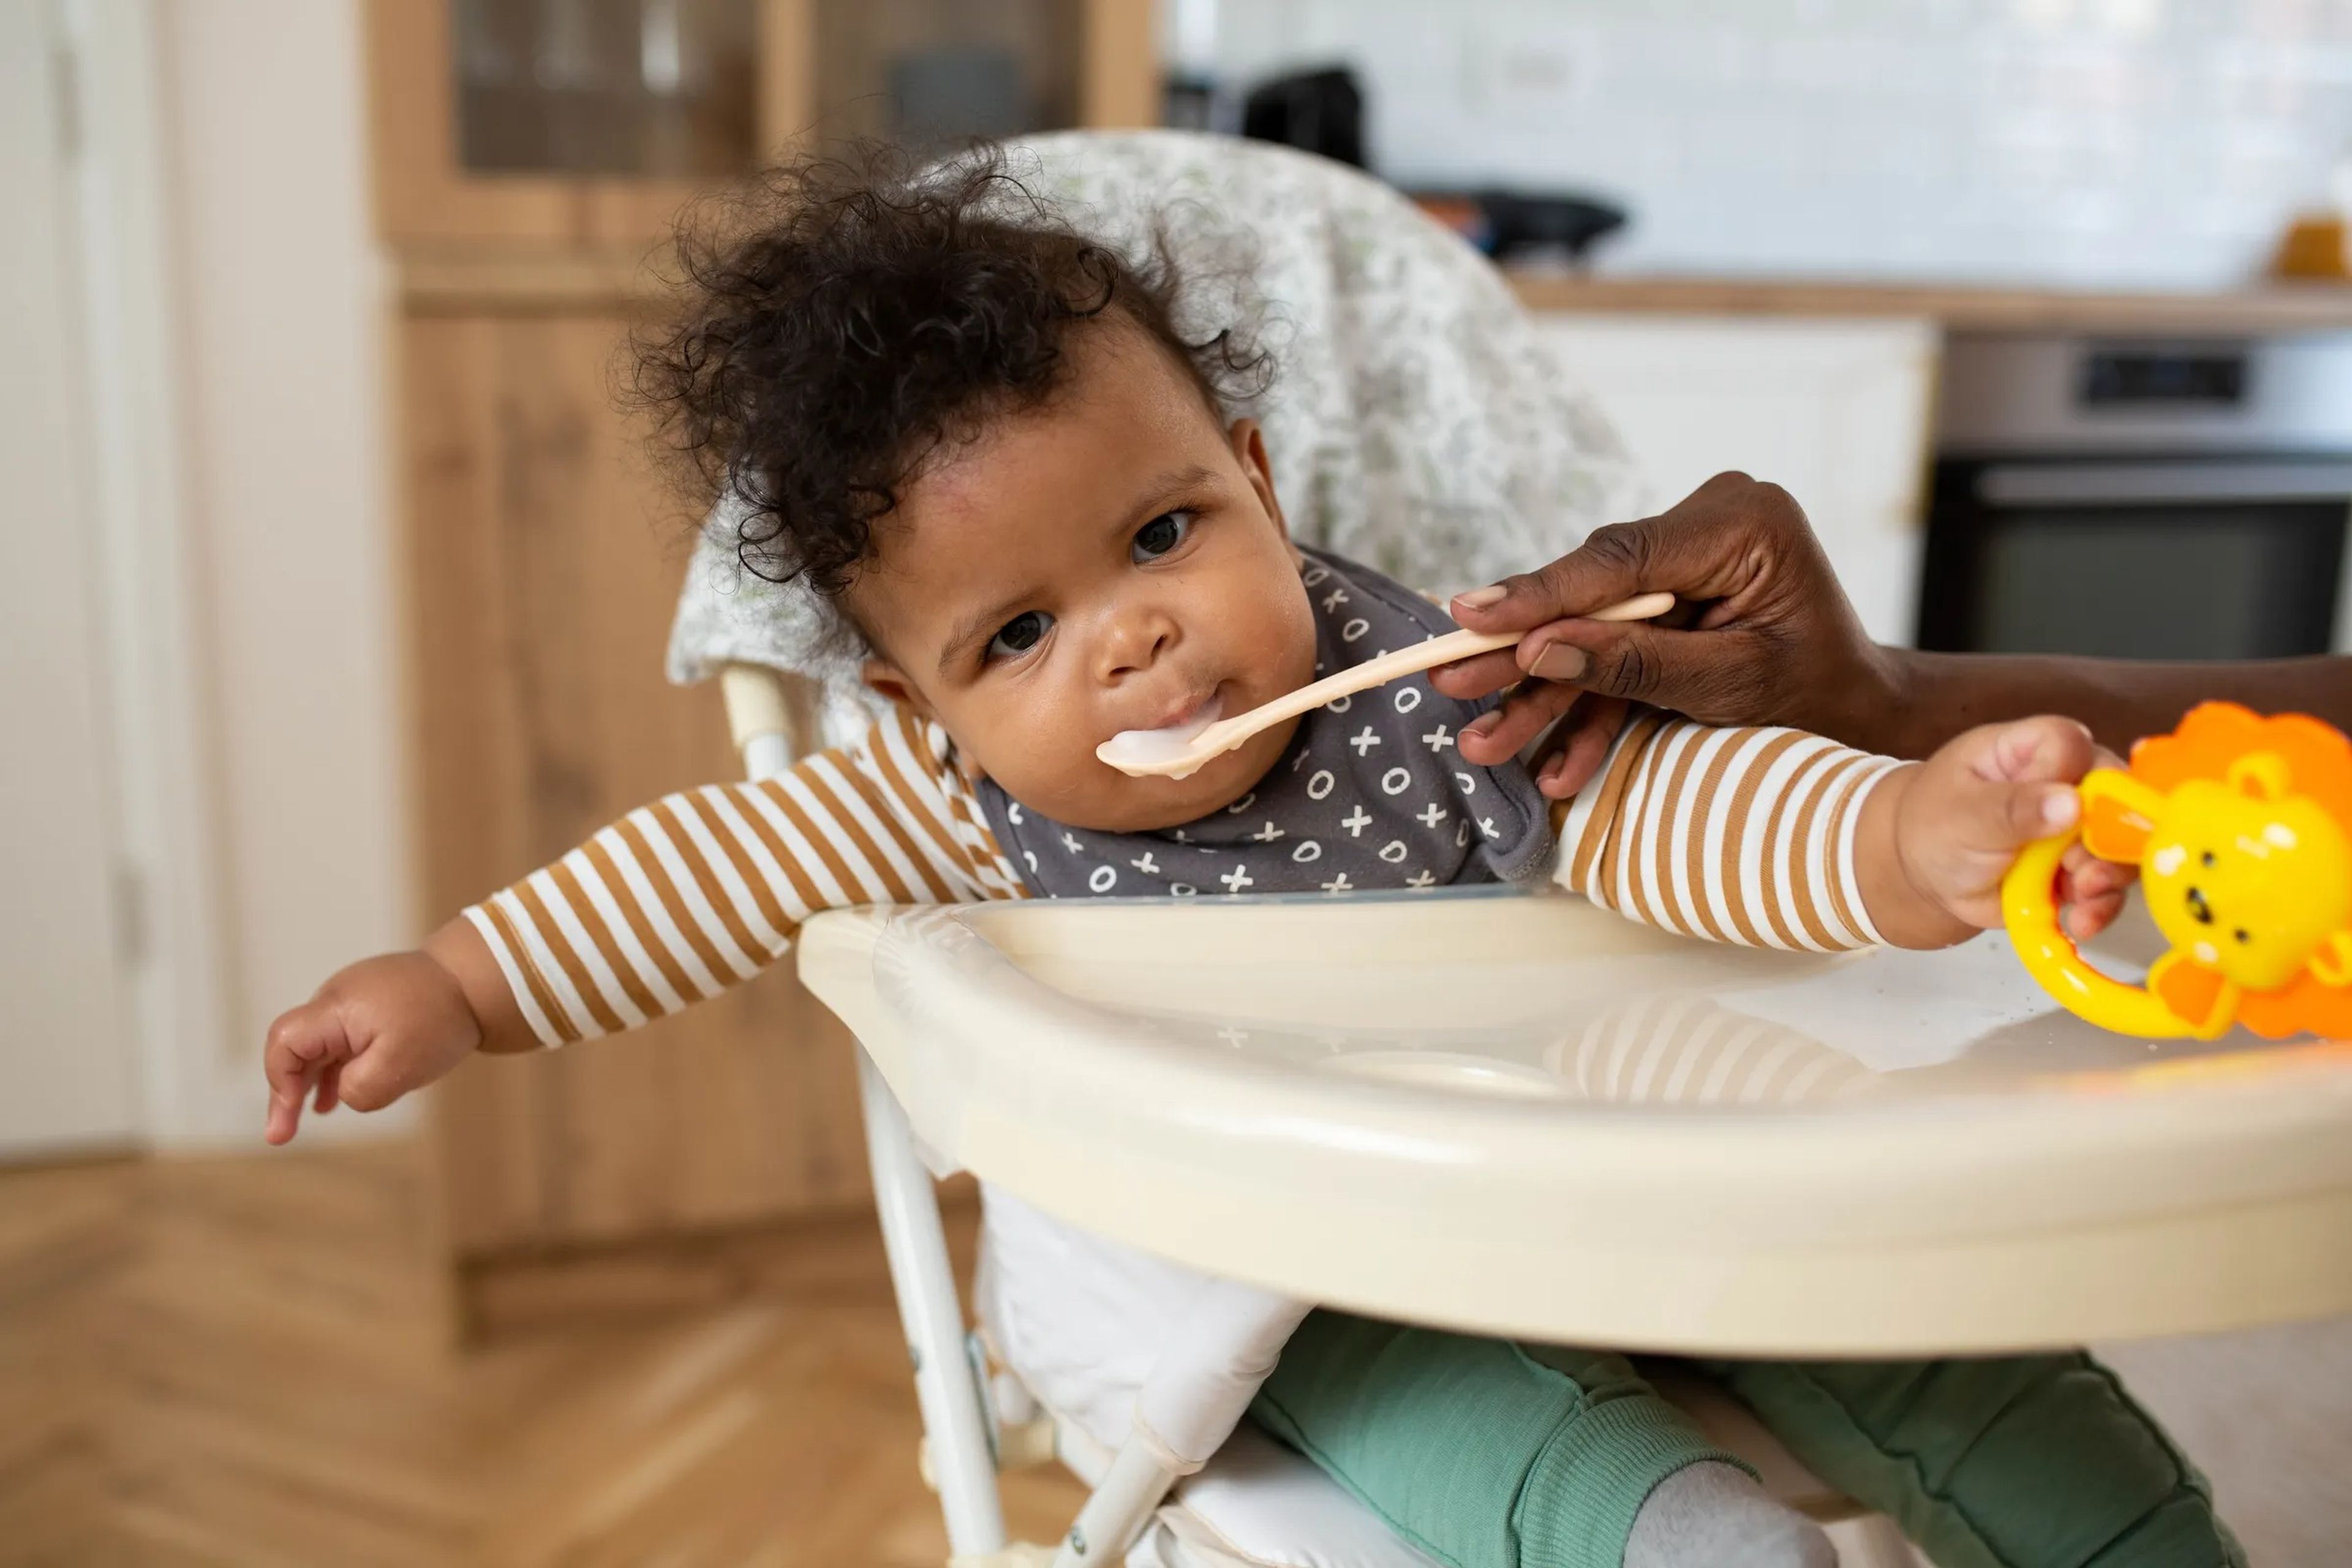 Los padres pasan demasiado tiempo limpiando a los bebés durante las comidas.